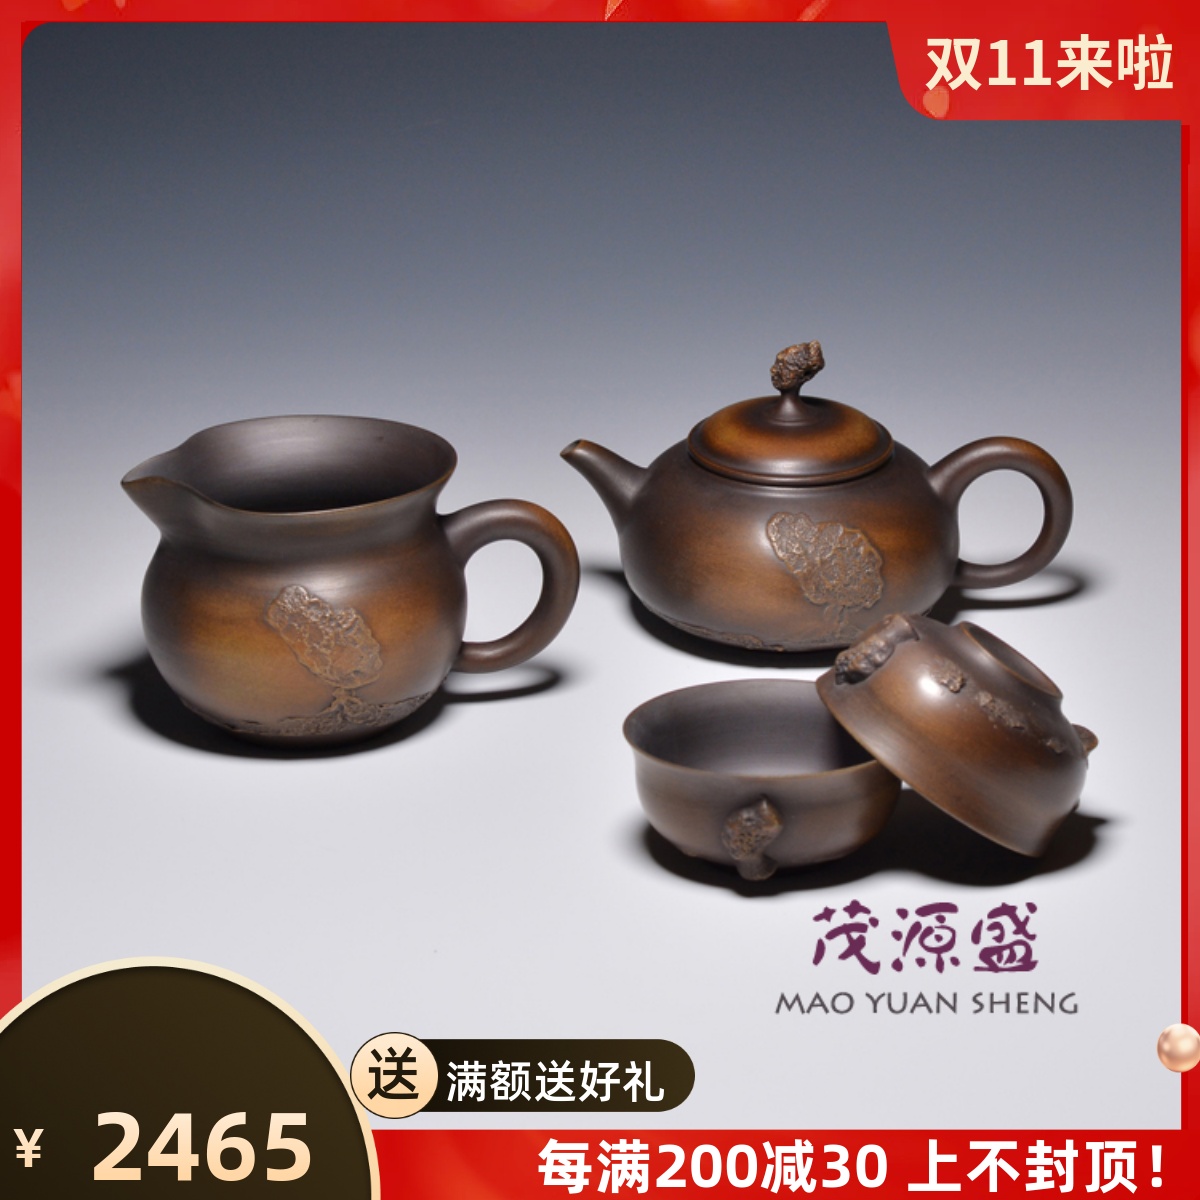 茂源盛】台湾张自立纯手工堆雕刻窑变陶中式茶壶-玫瑰200ml-Taobao